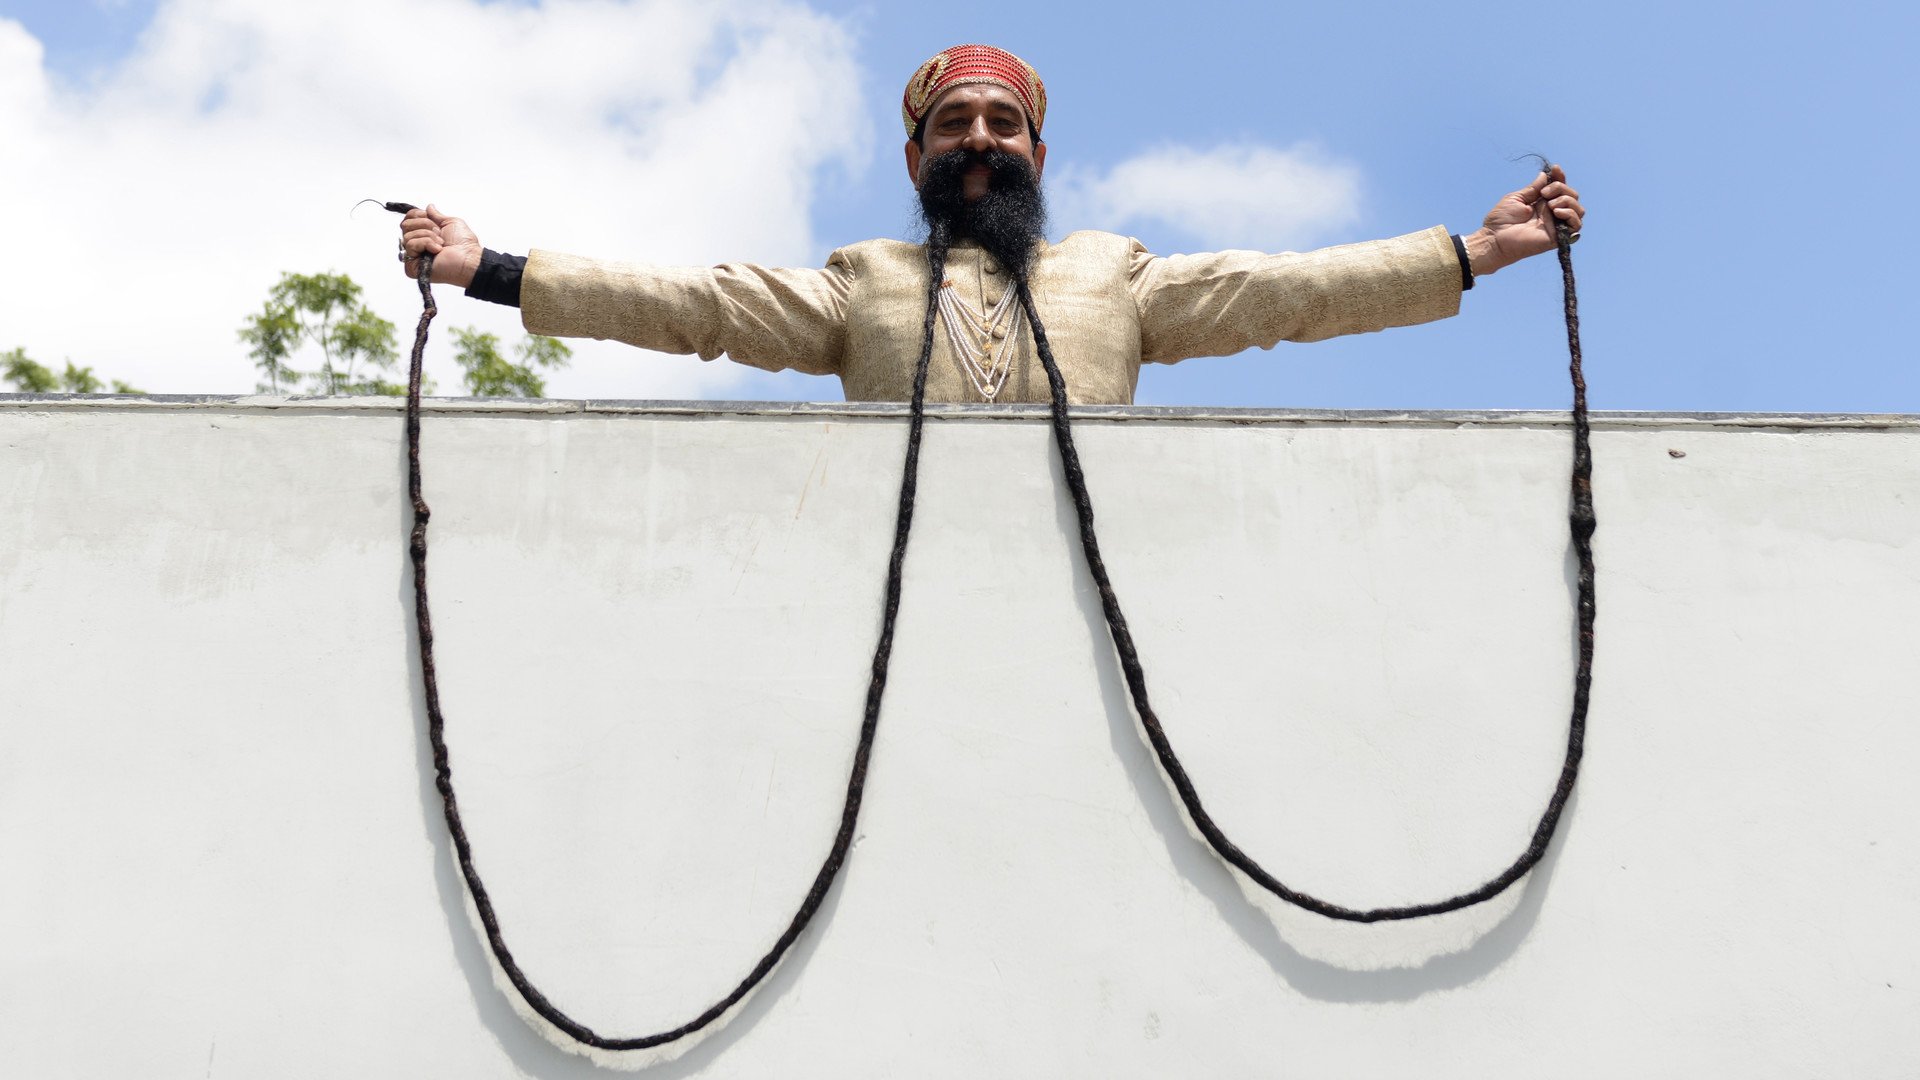 الهندي رام سينغ،61 عاما، يمسك بشواربه التي يصل طولها إلى 5.4 مترا في مدينة أحمدأباد 24 سبتمبر   